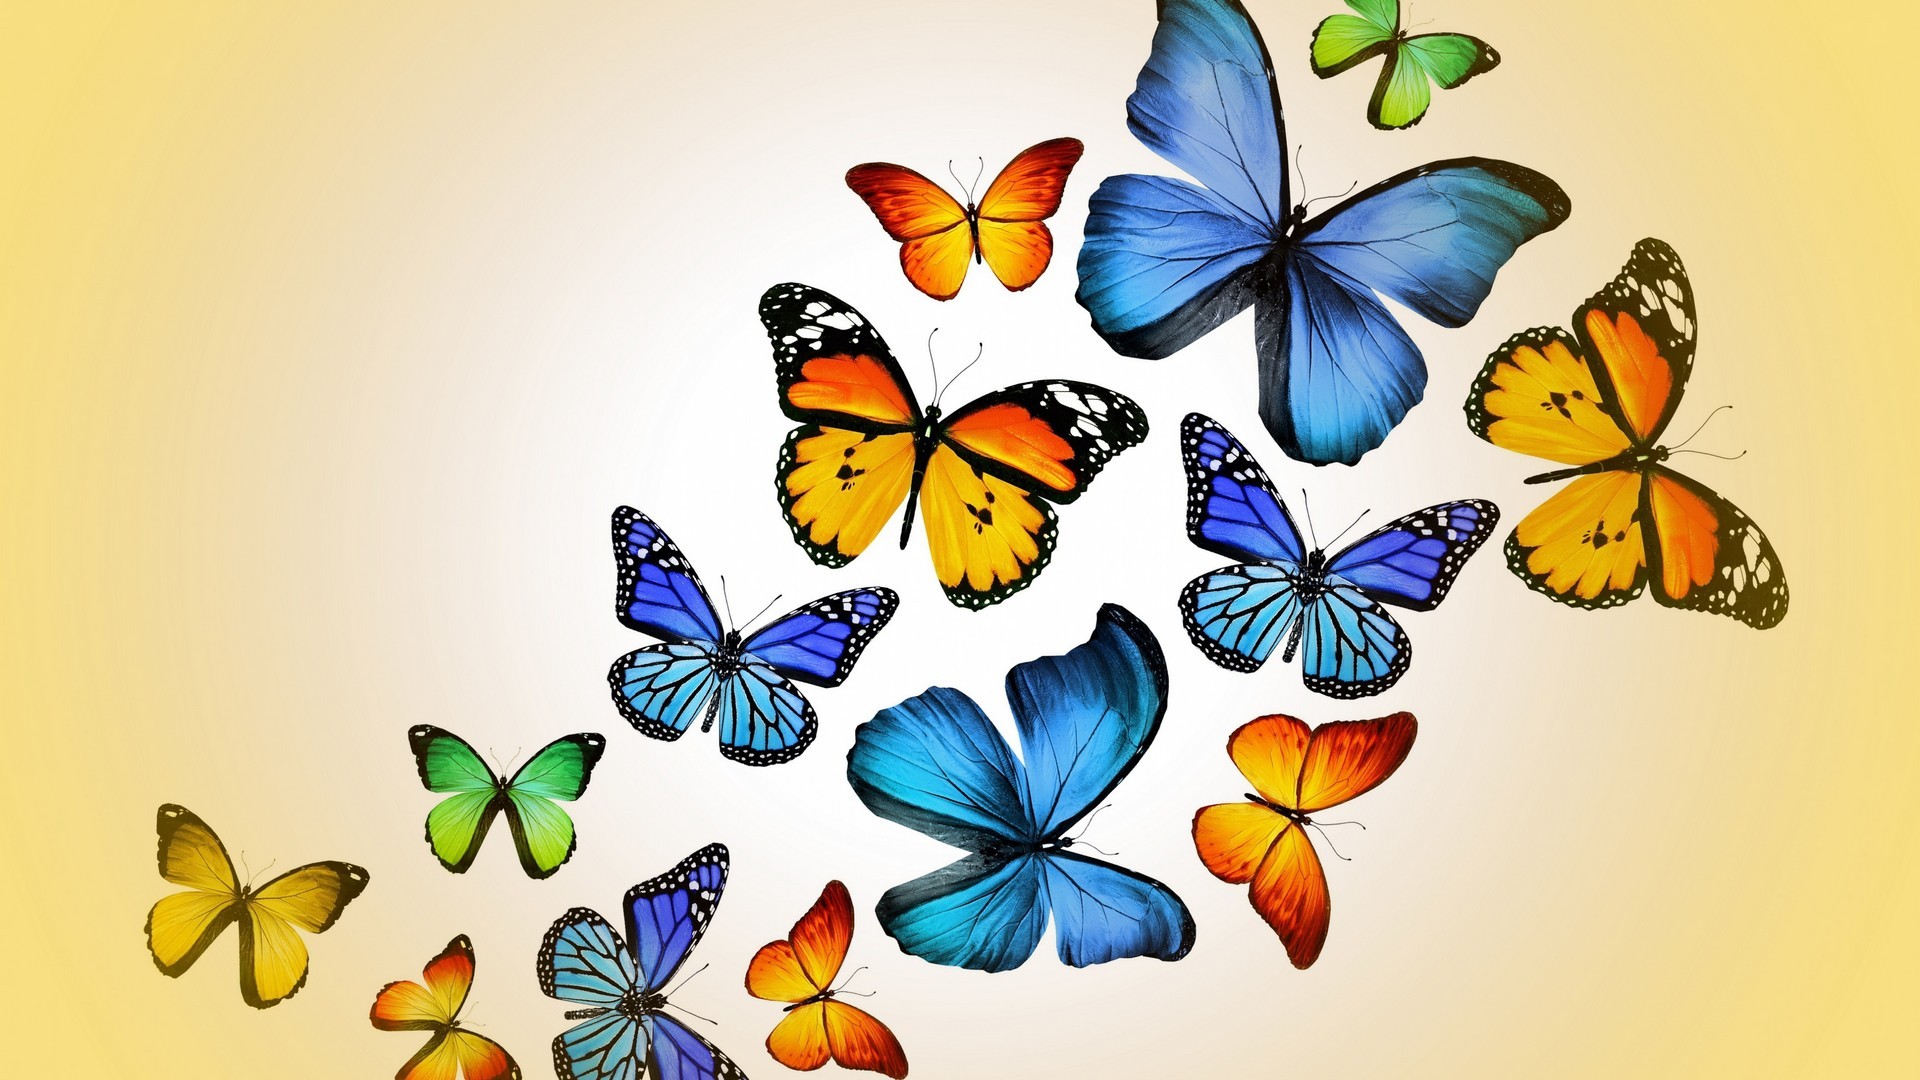 Wallpaper Butterfly 1920x1080